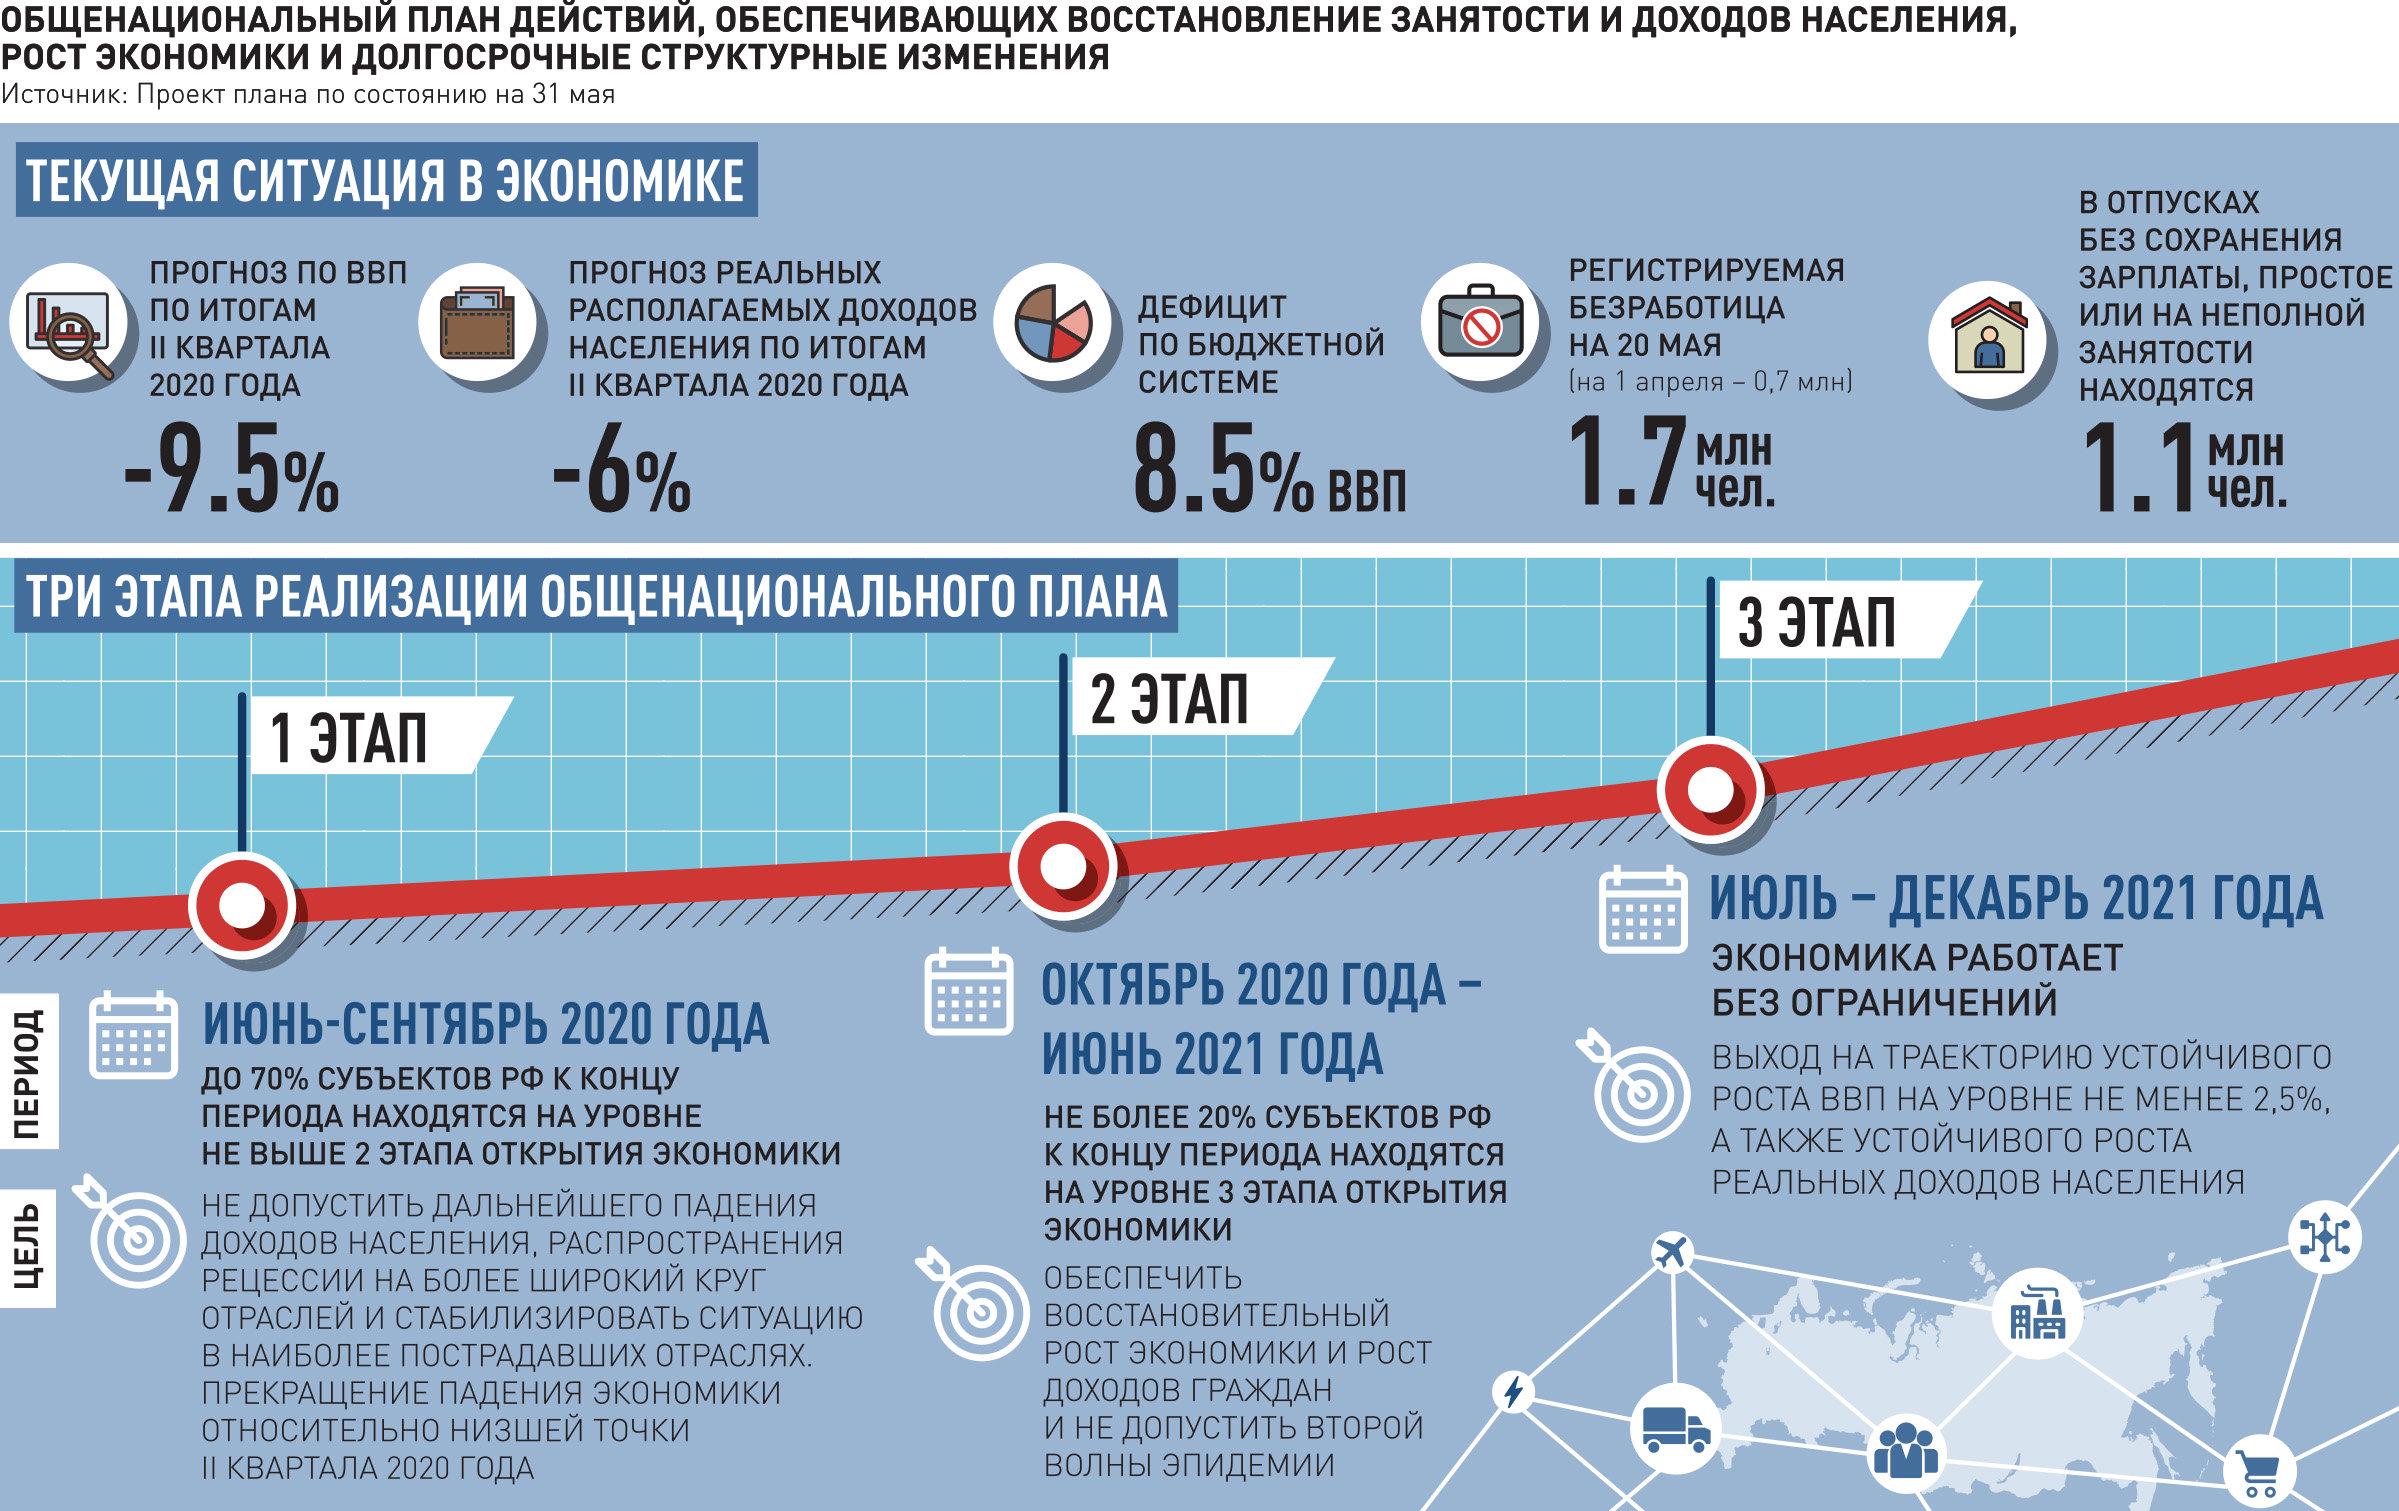 2020 какие изменения будут. План инфографика. Экономика России 2020. Экономический рост России по годам. Новостная инфографика.